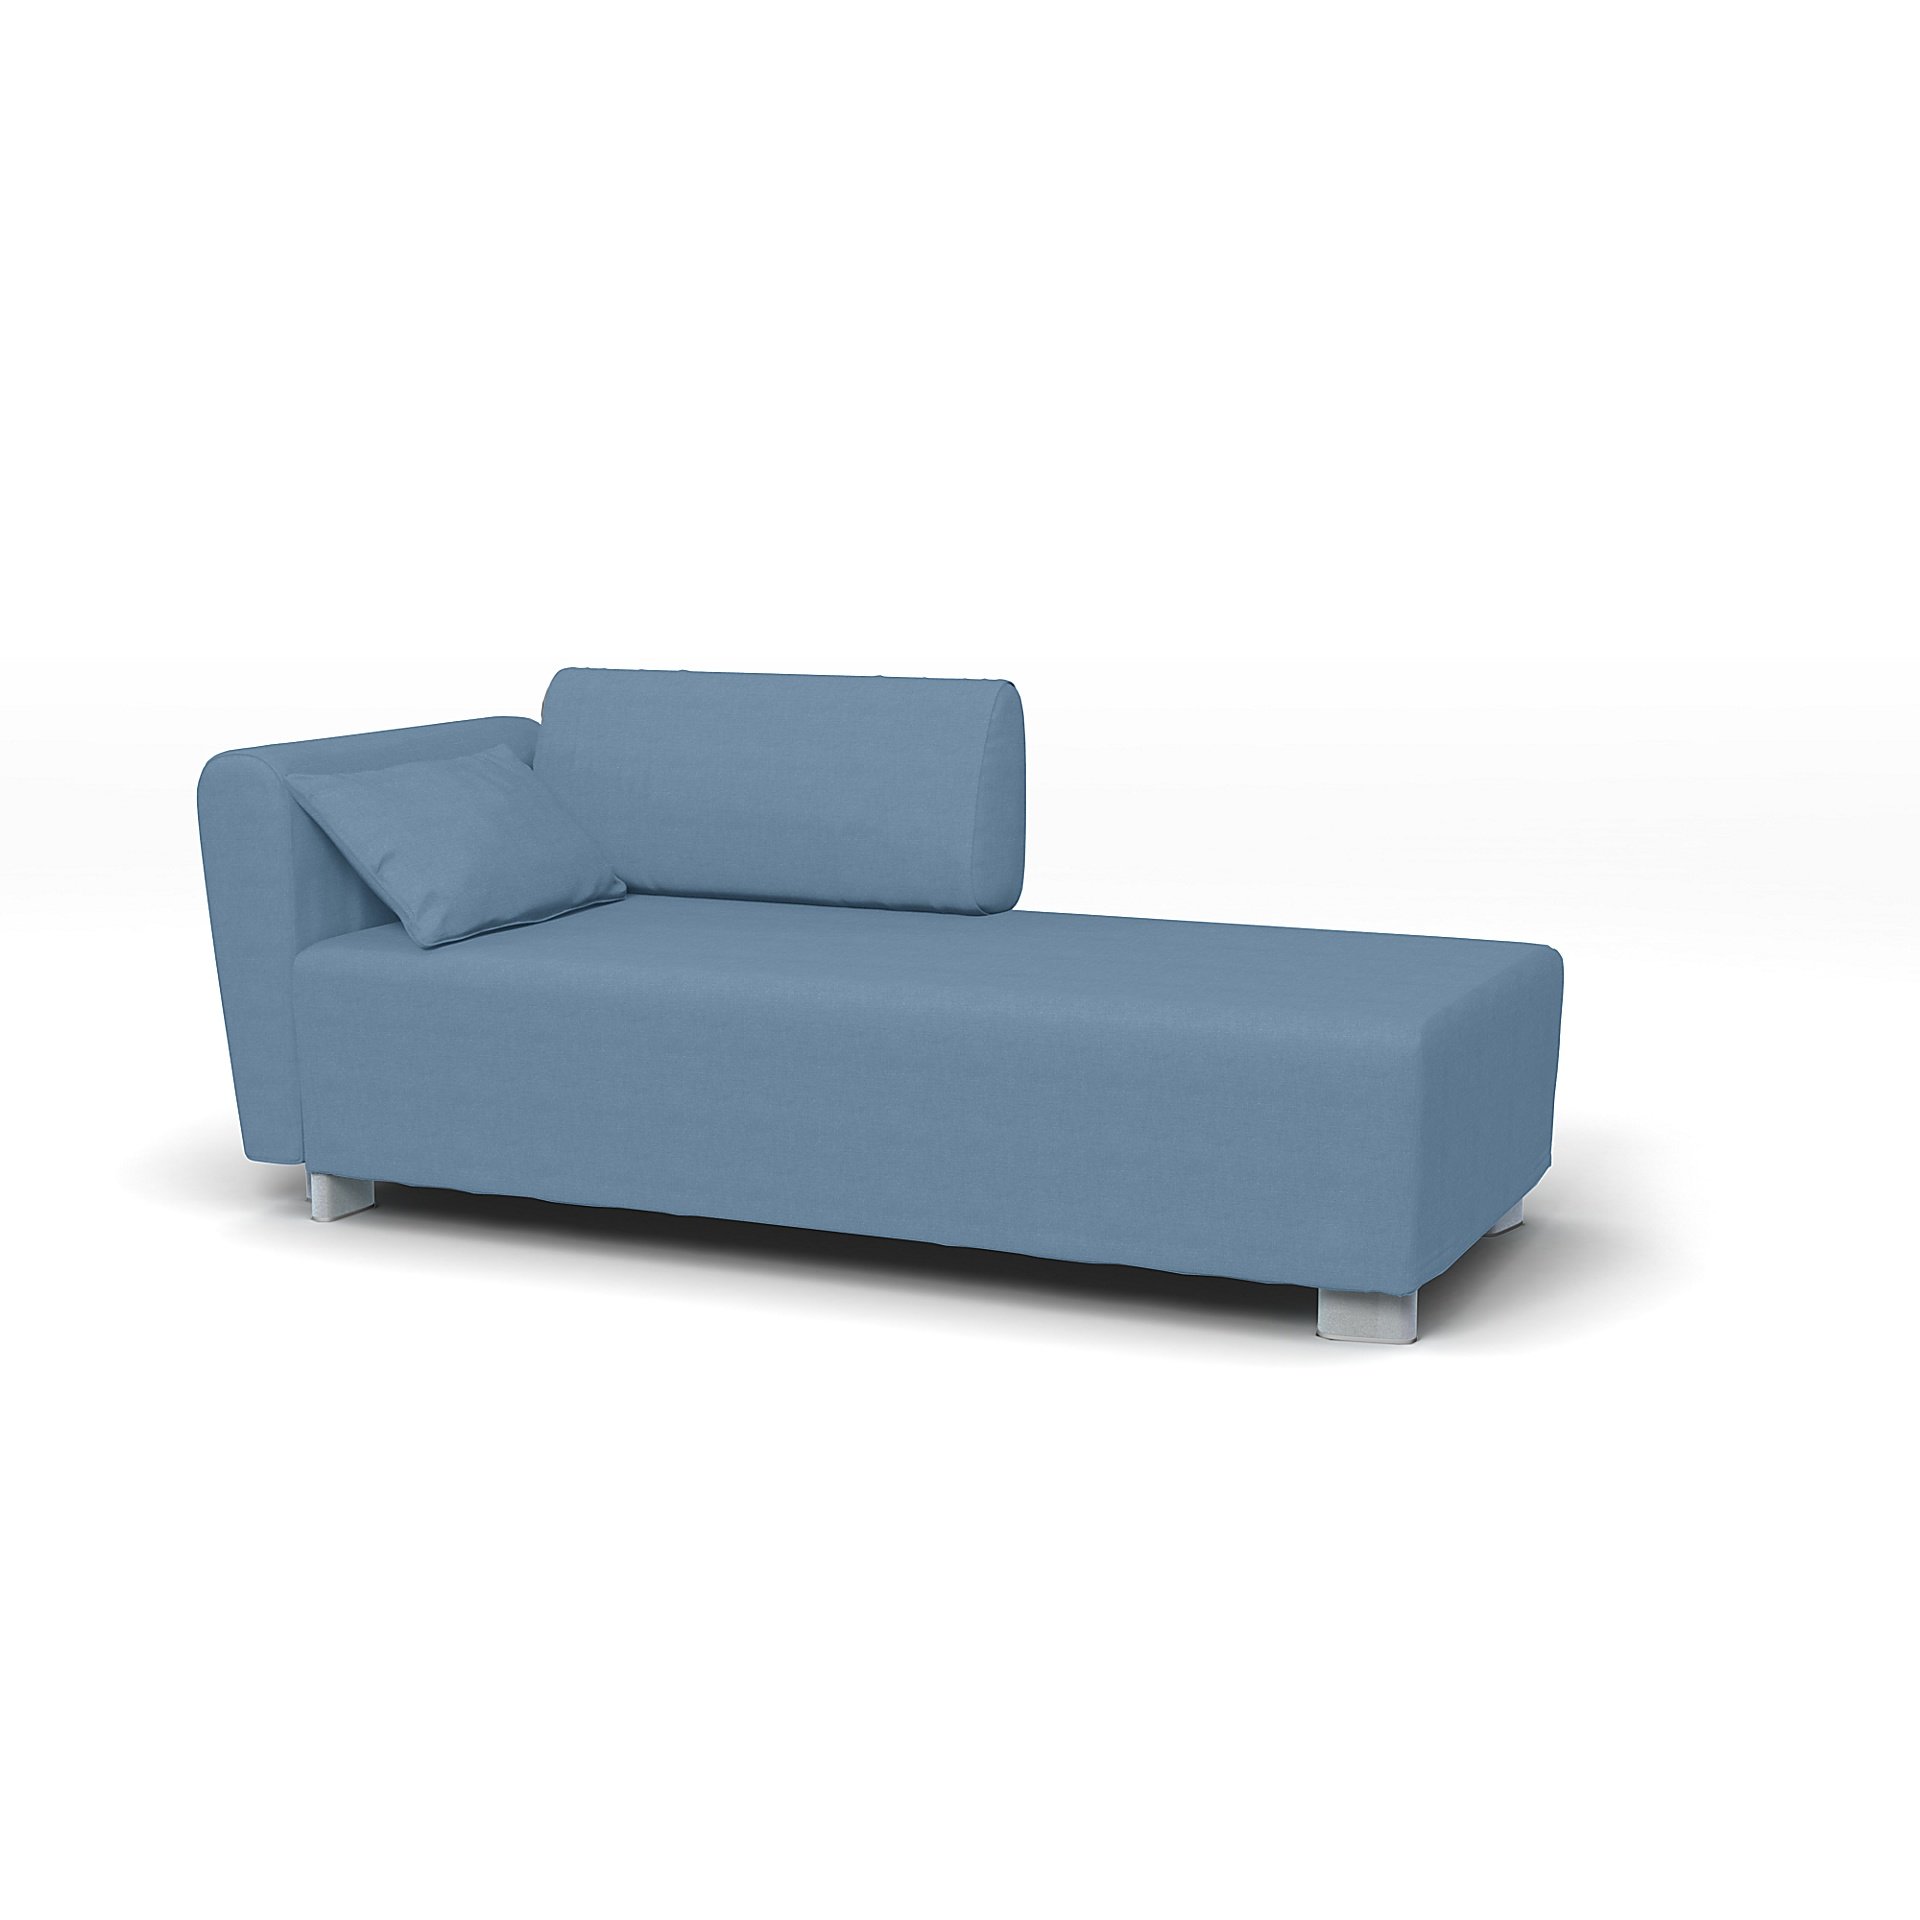 IKEA - Mysinge Chaise Longue with Armrest Cover, Vintage Blue, Linen - Bemz